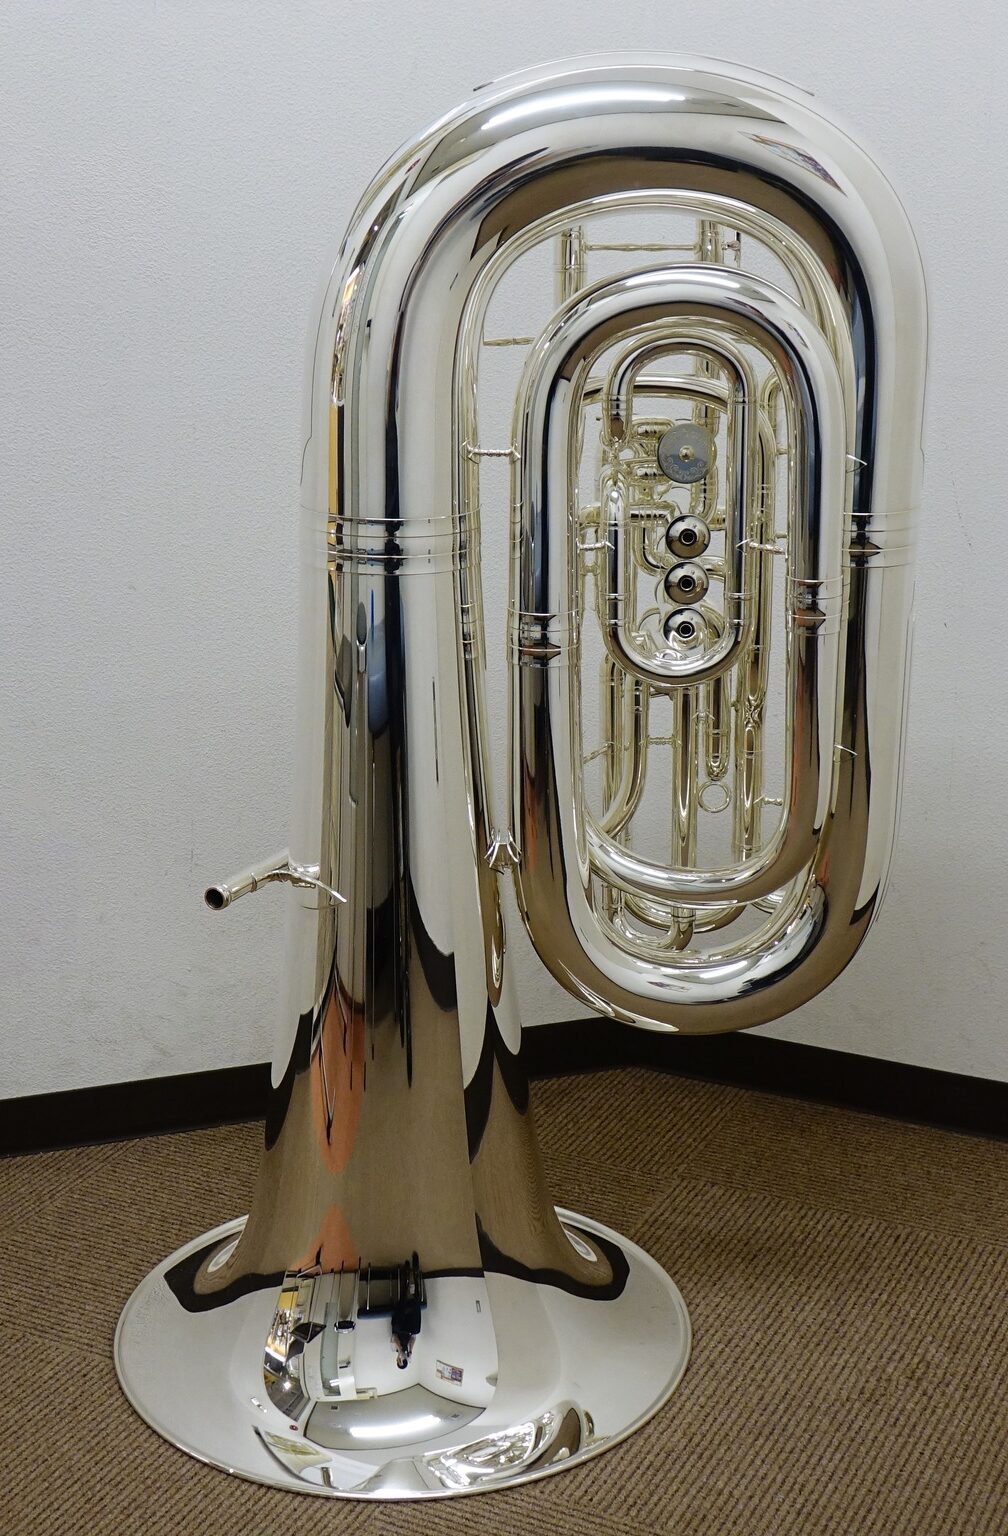 B S C管 チューバ 3198s入荷しました 管楽器は東京の管楽器専門店ダクで